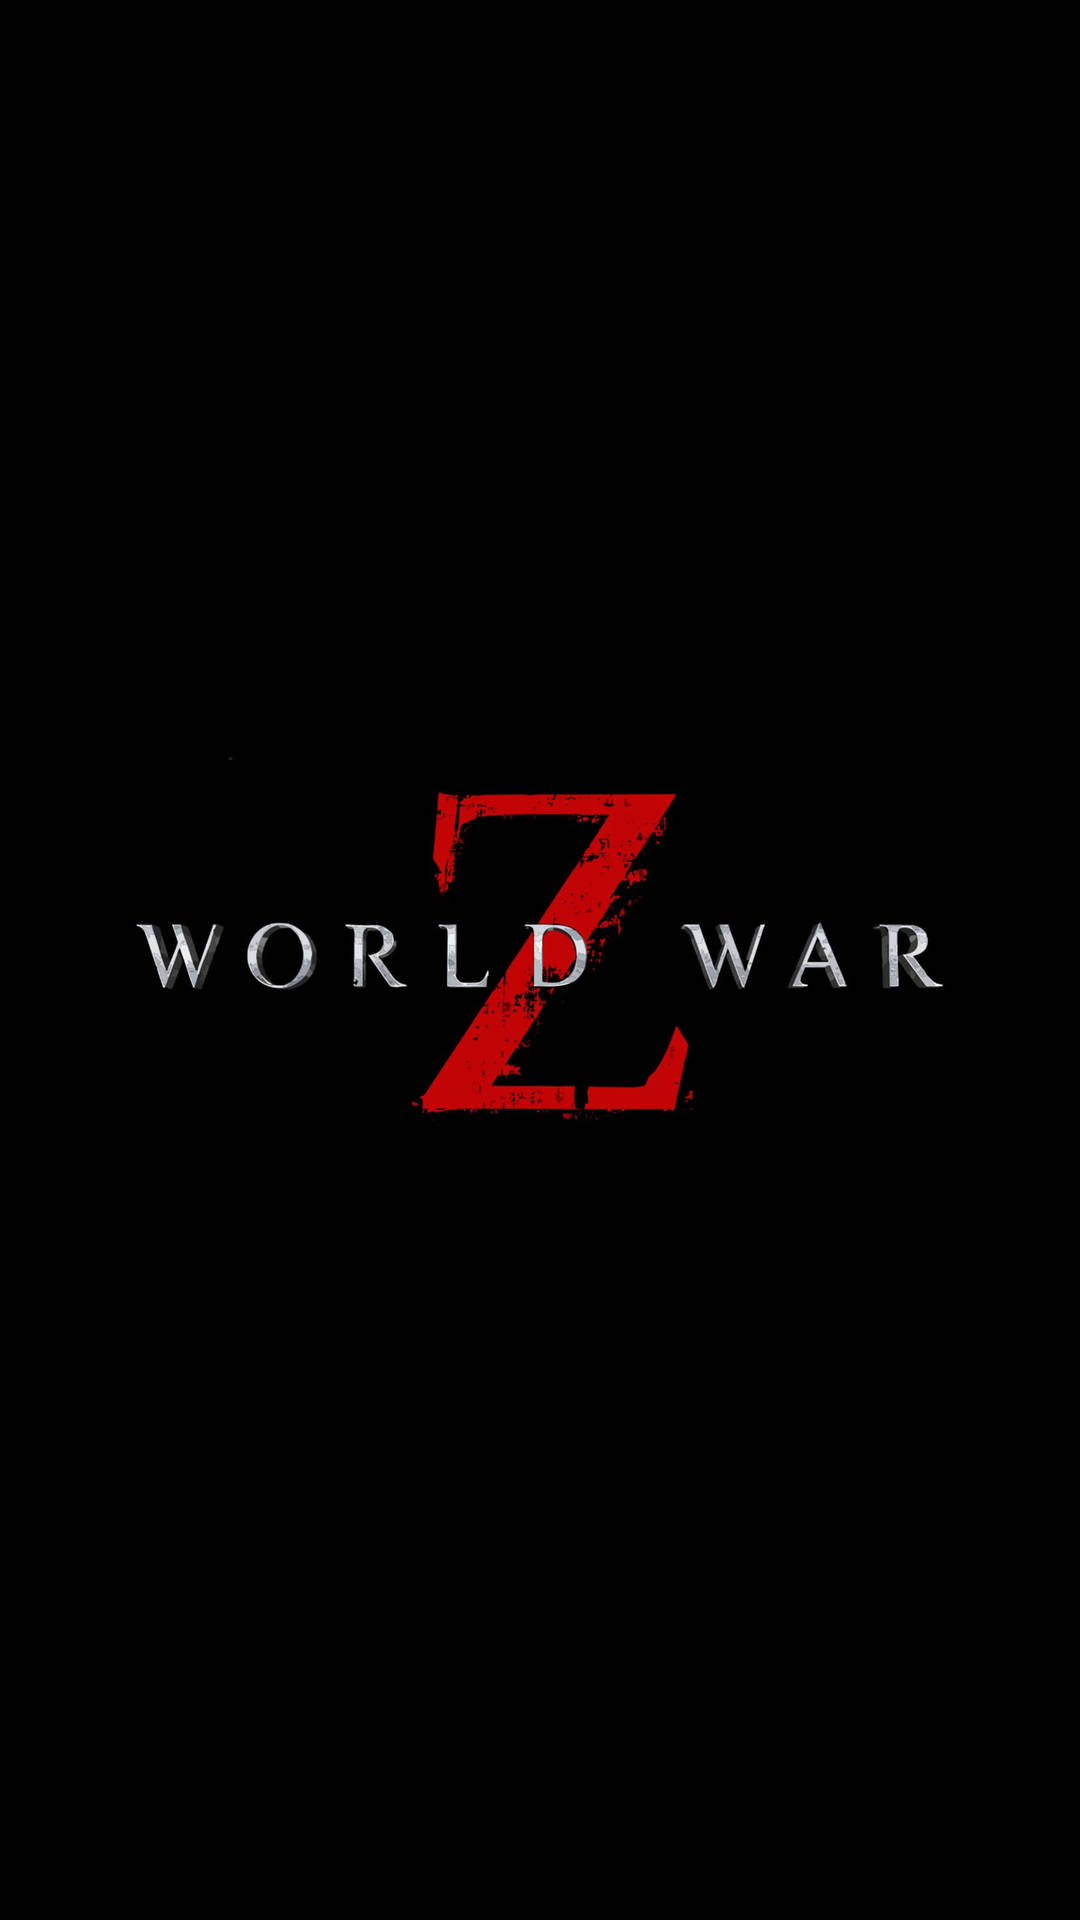 Logotipodel Juego World War Z En Negro. Fondo de pantalla